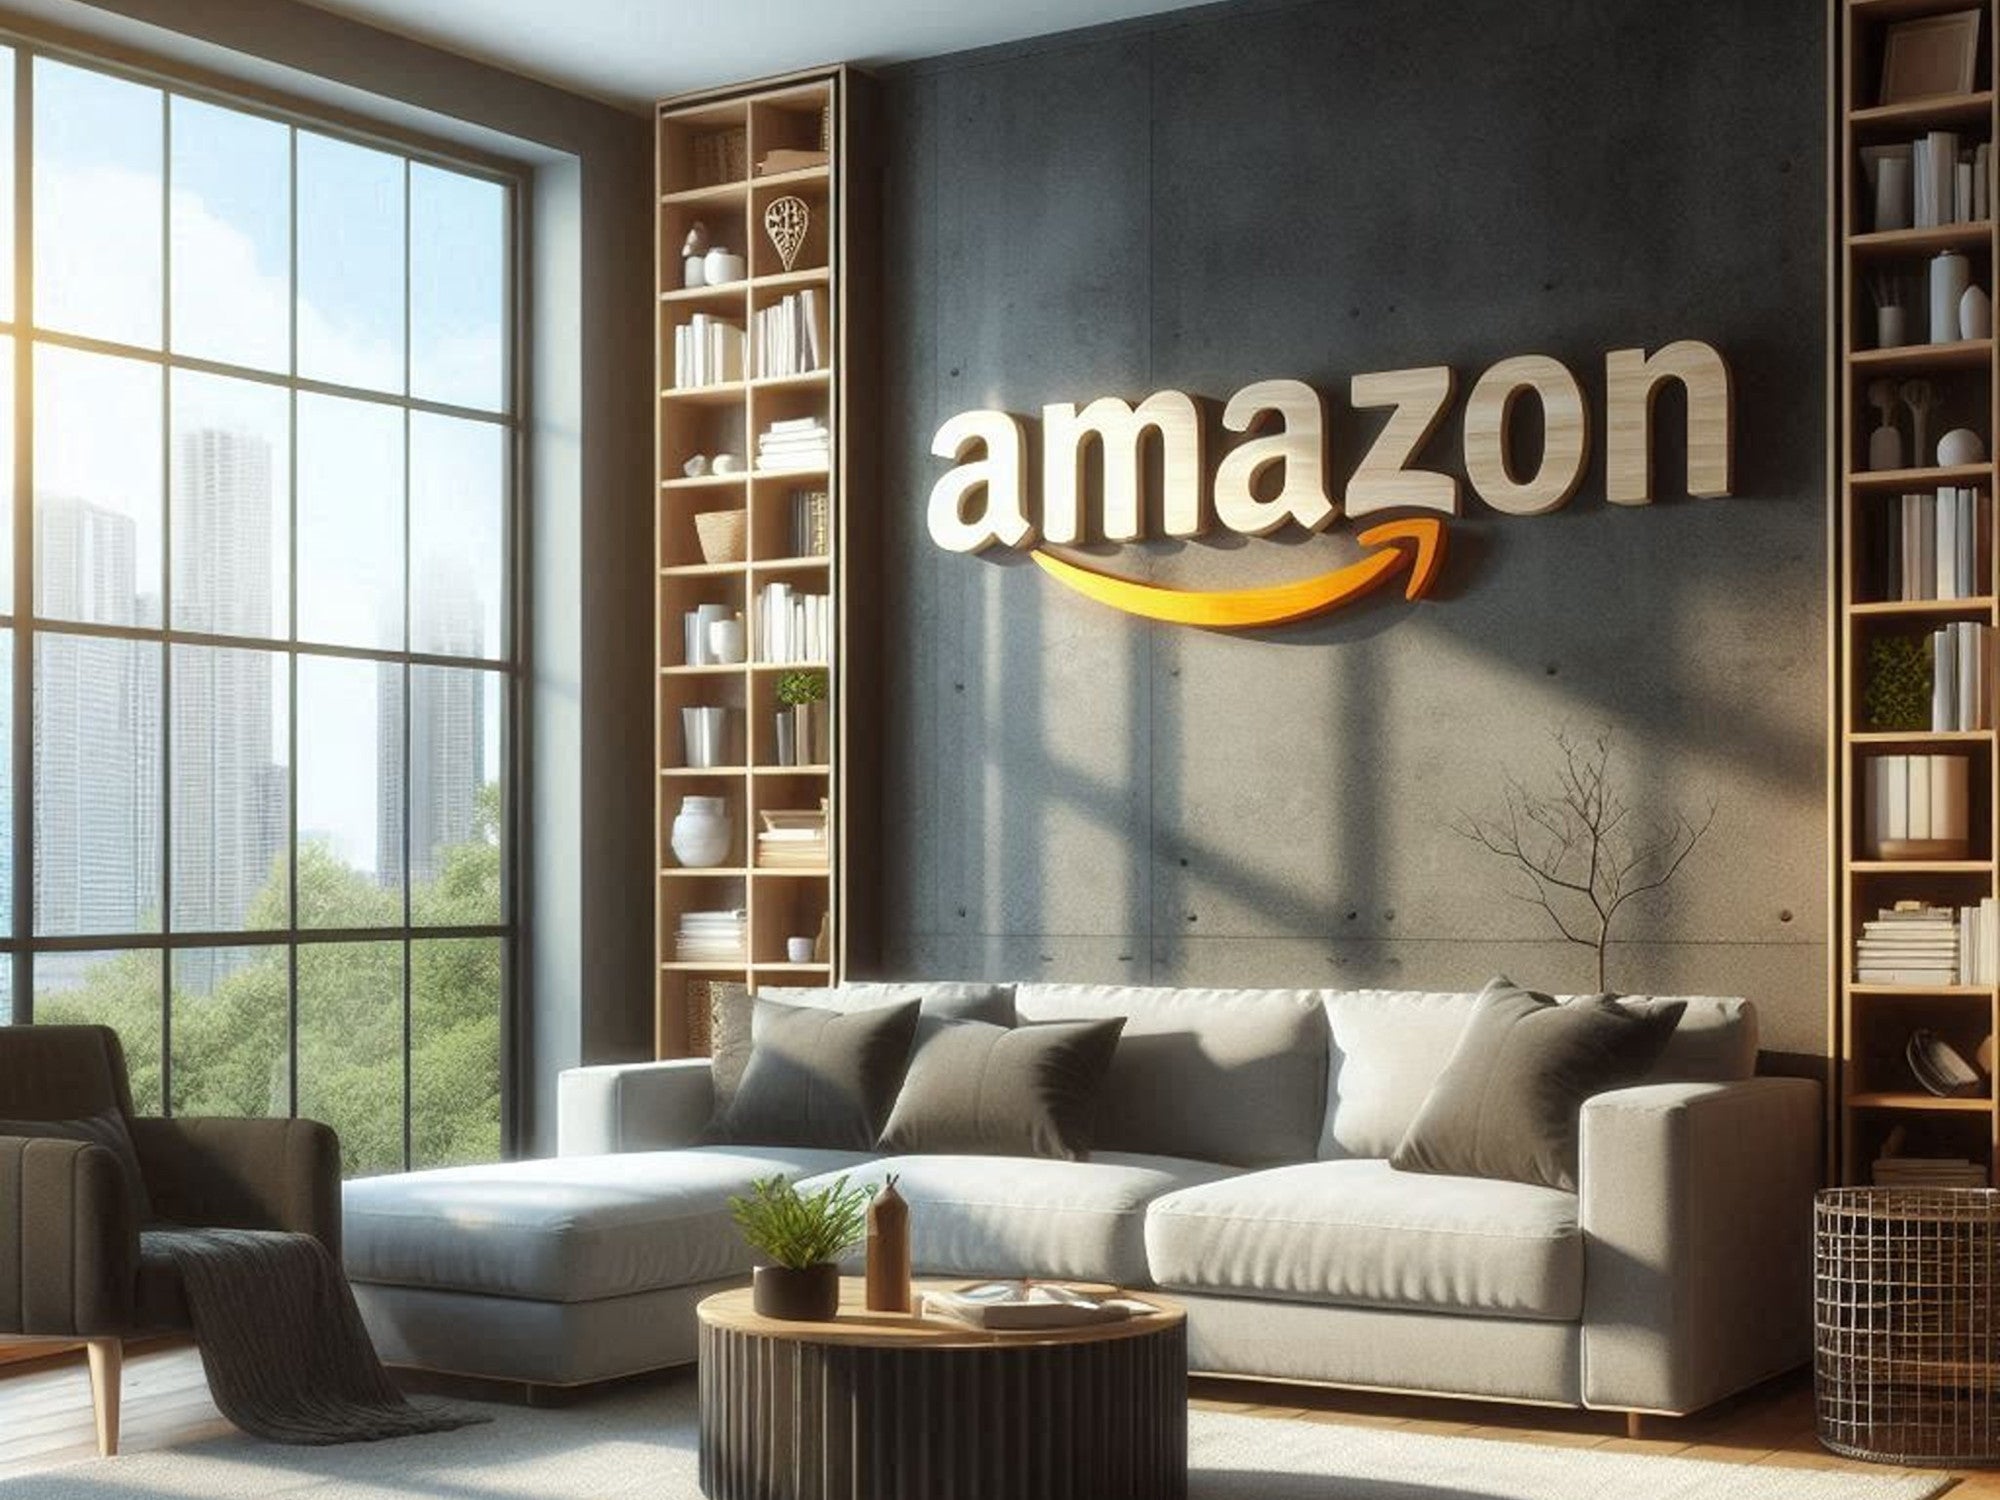 Amazon-Logo in einem Wohnzimmer.